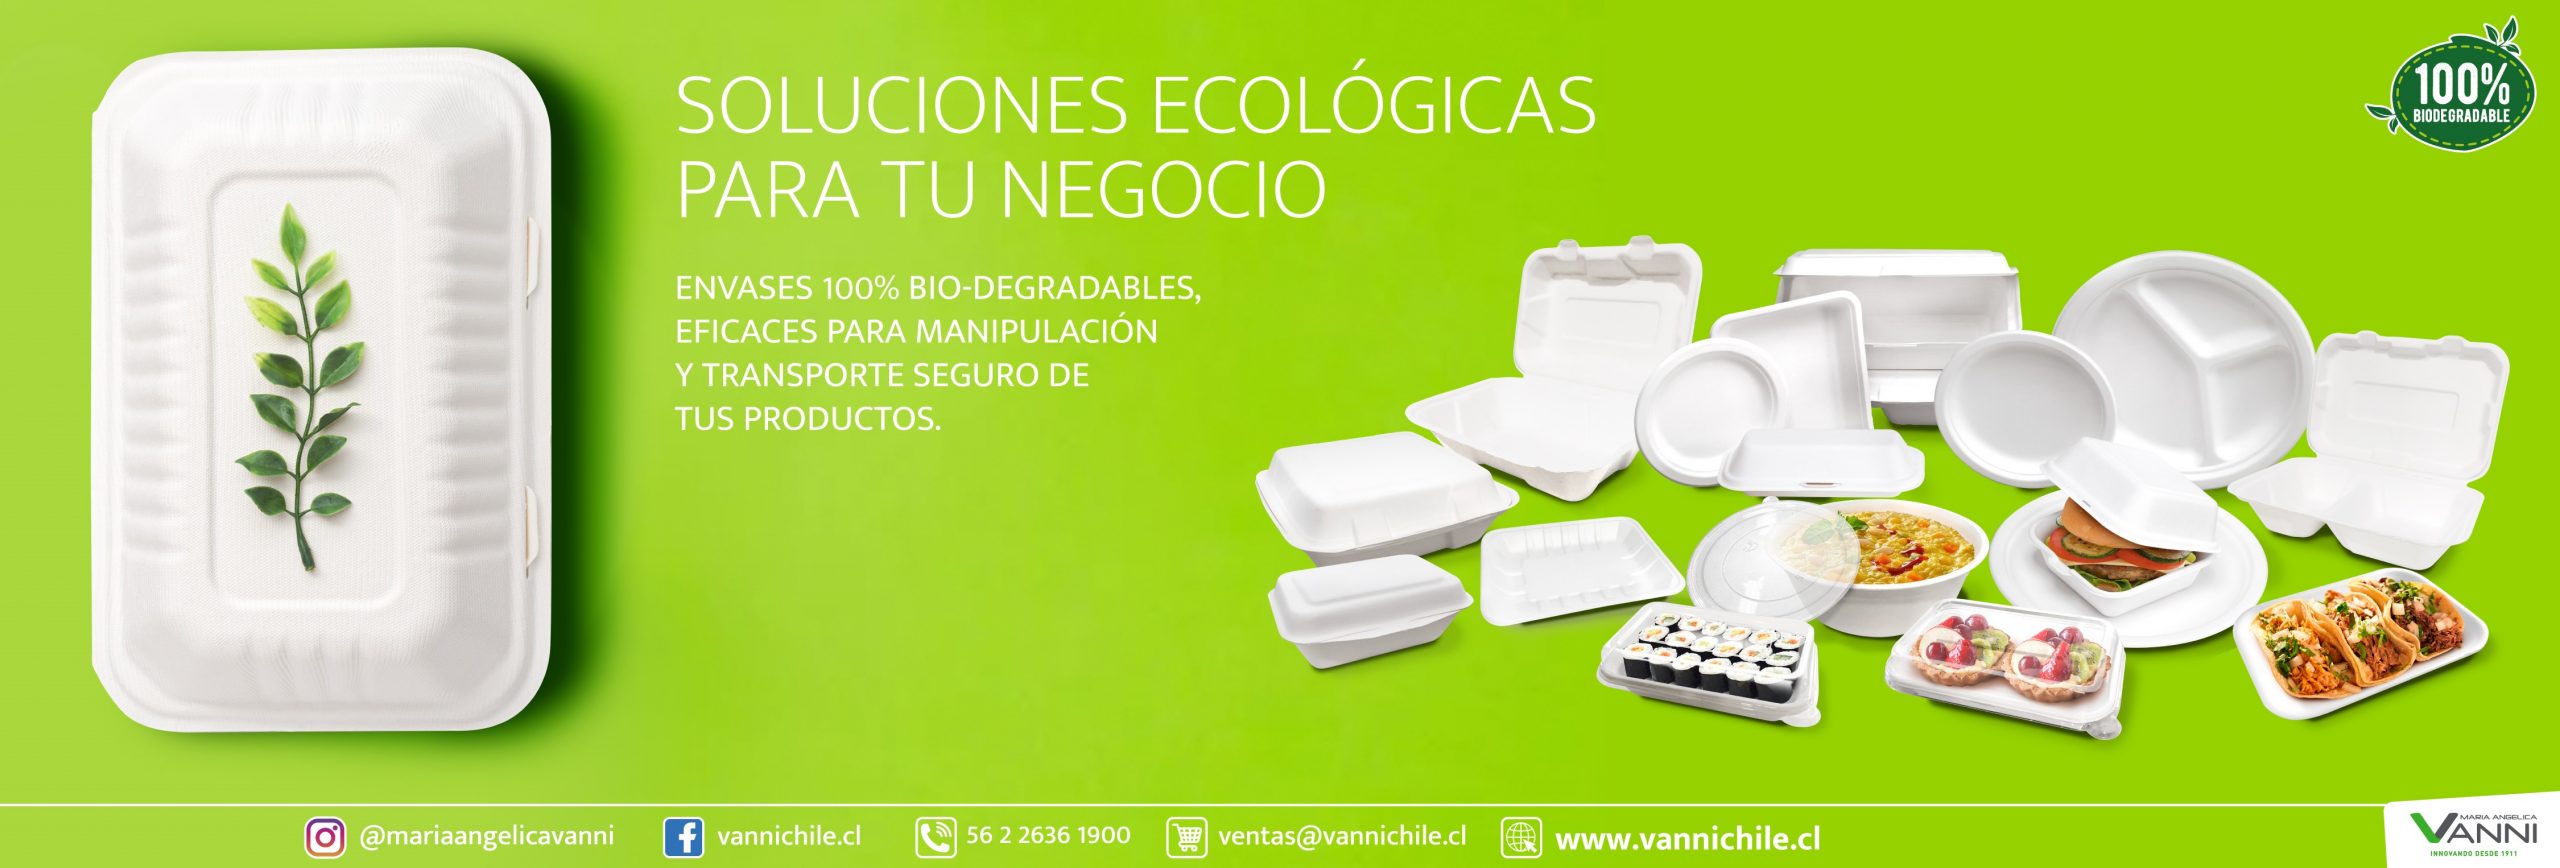 soluciones_ecologicas